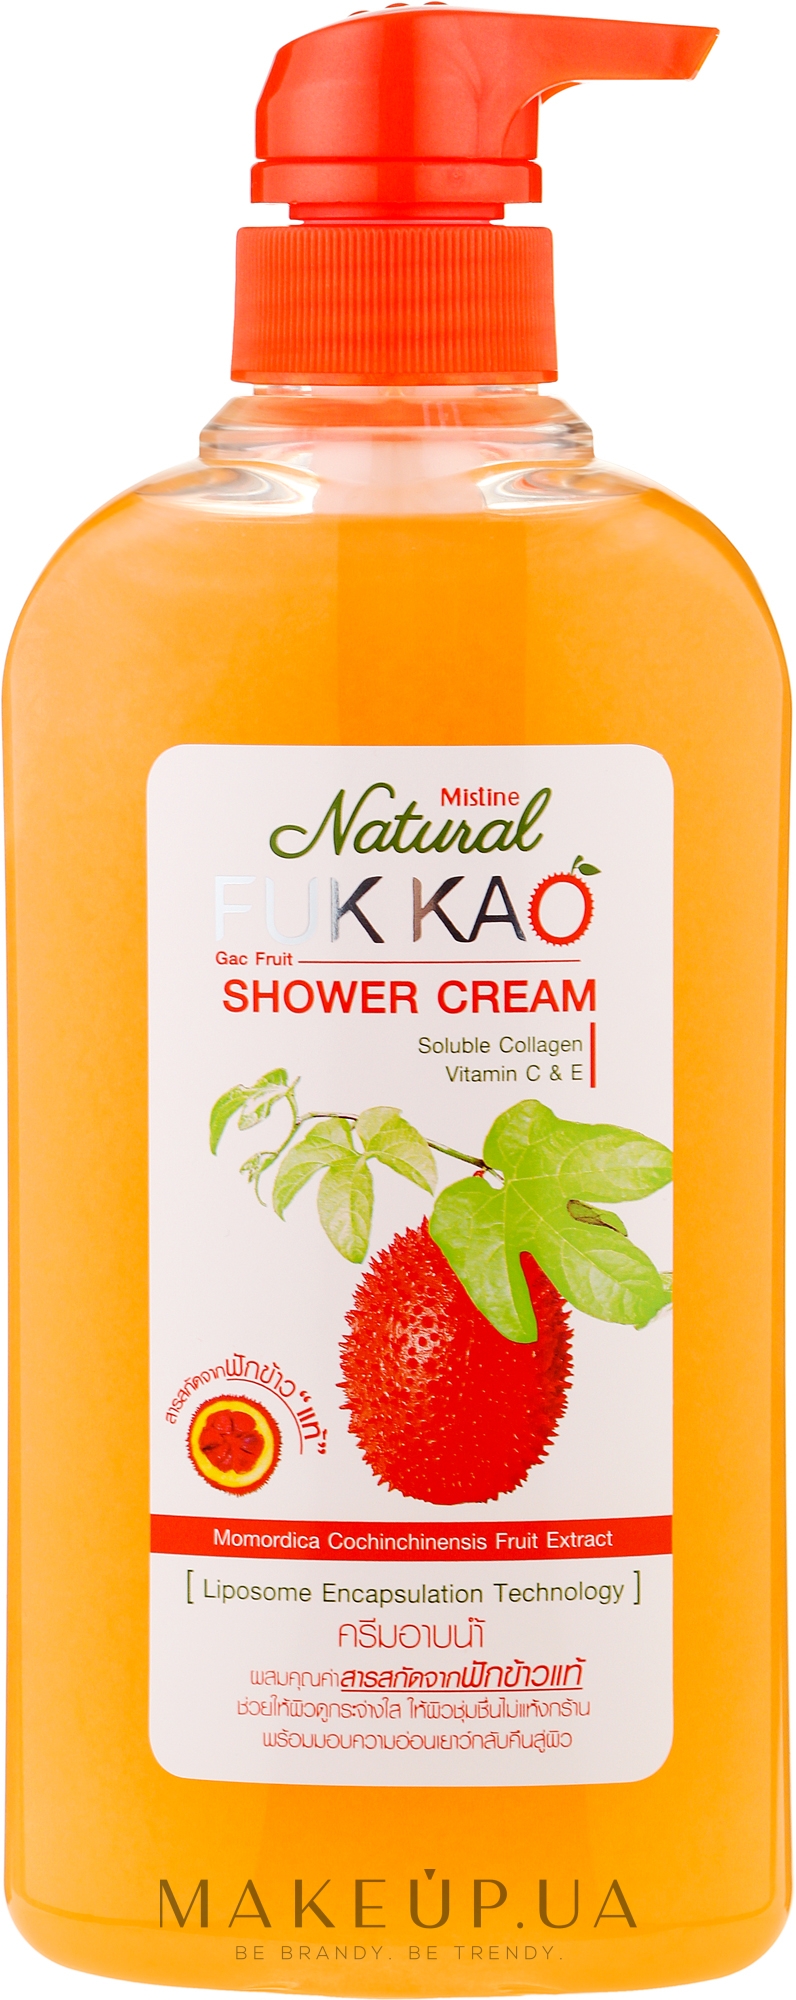 Крем-гель для душа с экстрактом джекфрута и коллагеном - Mistine Natural Shower Cream — фото 500ml